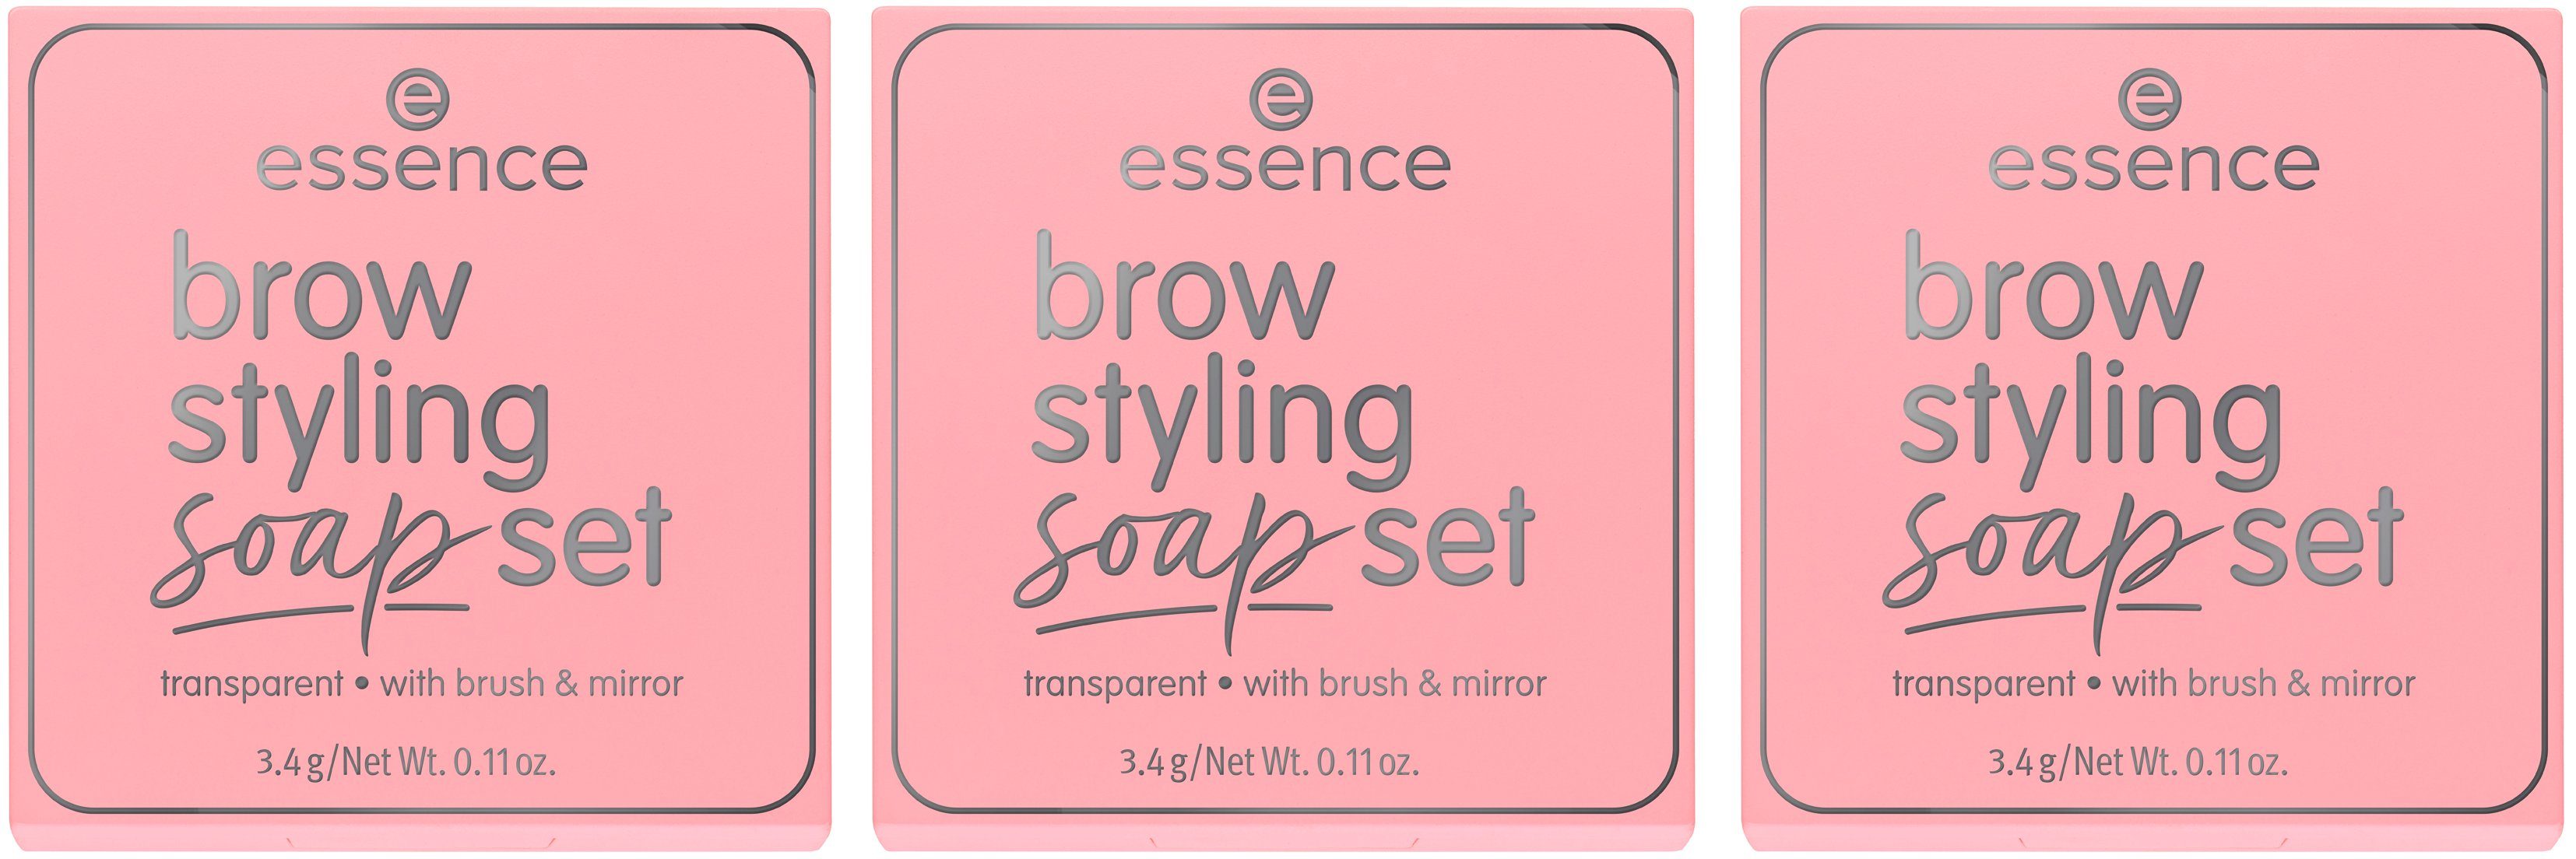 Essence Augen-Make-Up, styling und Spiegel Bürste 3-tlg., mit brow set, Augenbrauen-Gel soap Set